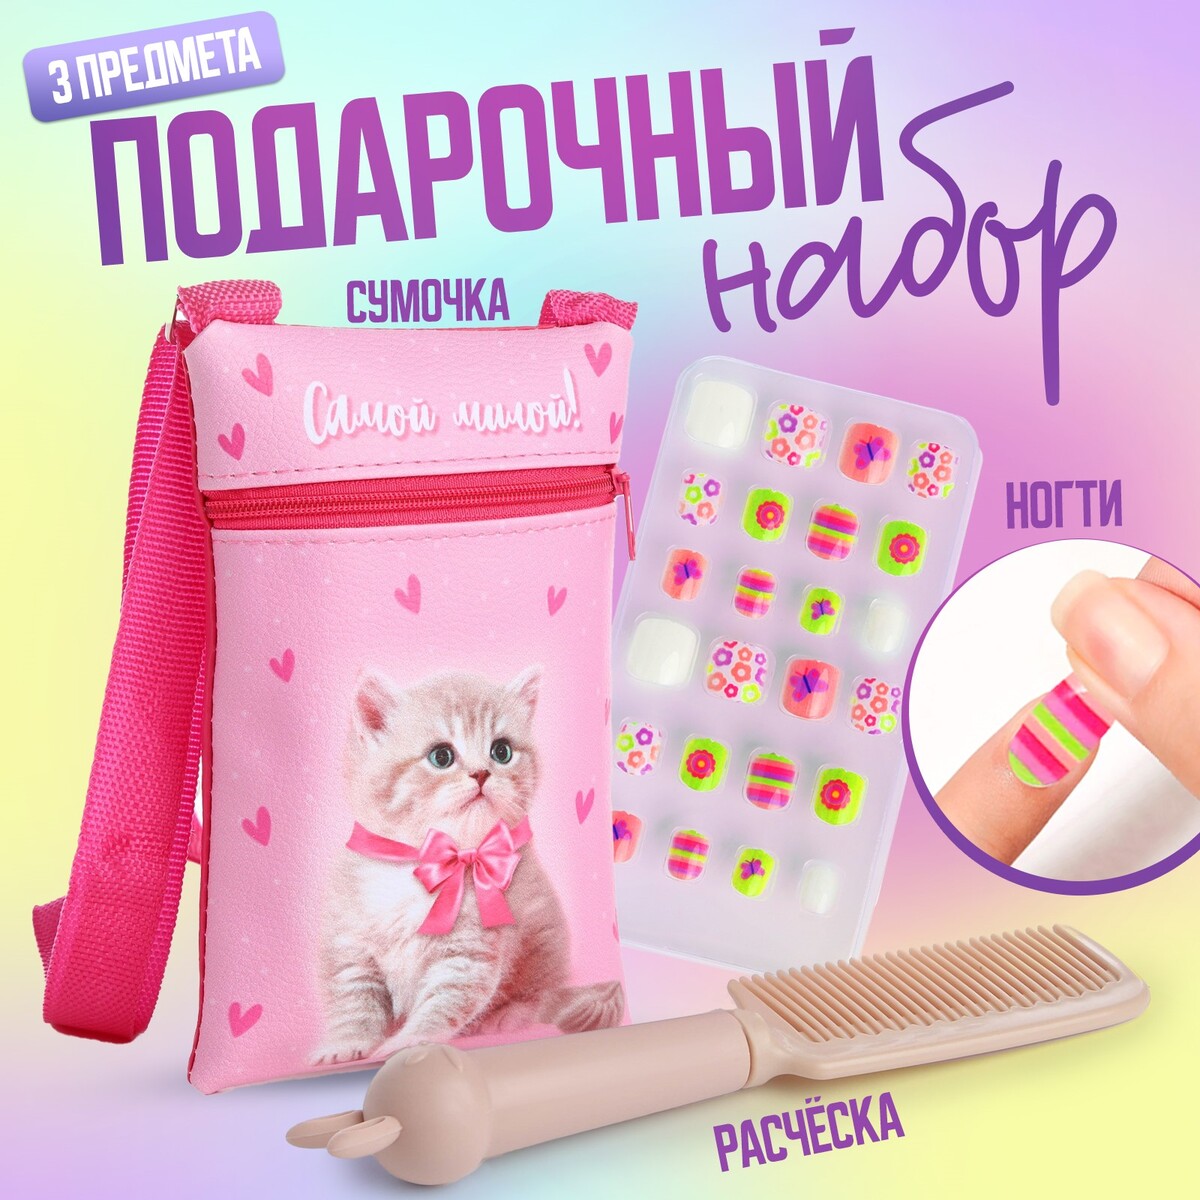 Детские накладные ногти, сумка, расчестка, подарочный набор для девочки